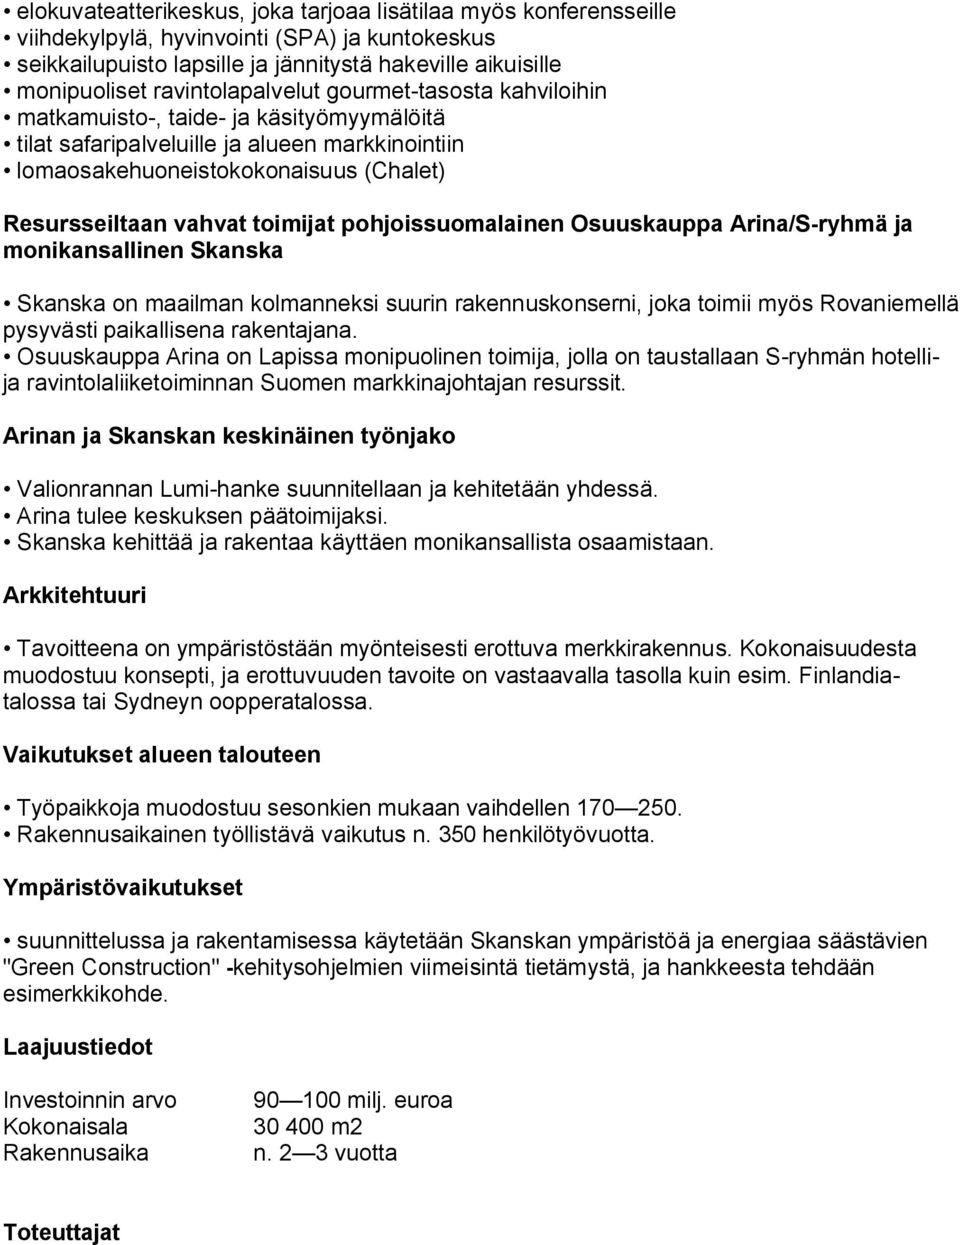 toimijat pohjoissuomalainen Osuuskauppa Arina/S ryhmä ja monikansallinen Skanska Skanska on maailman kolmanneksi suurin rakennuskonserni, joka toimii myös Rovaniemellä pysyvästi paikallisena